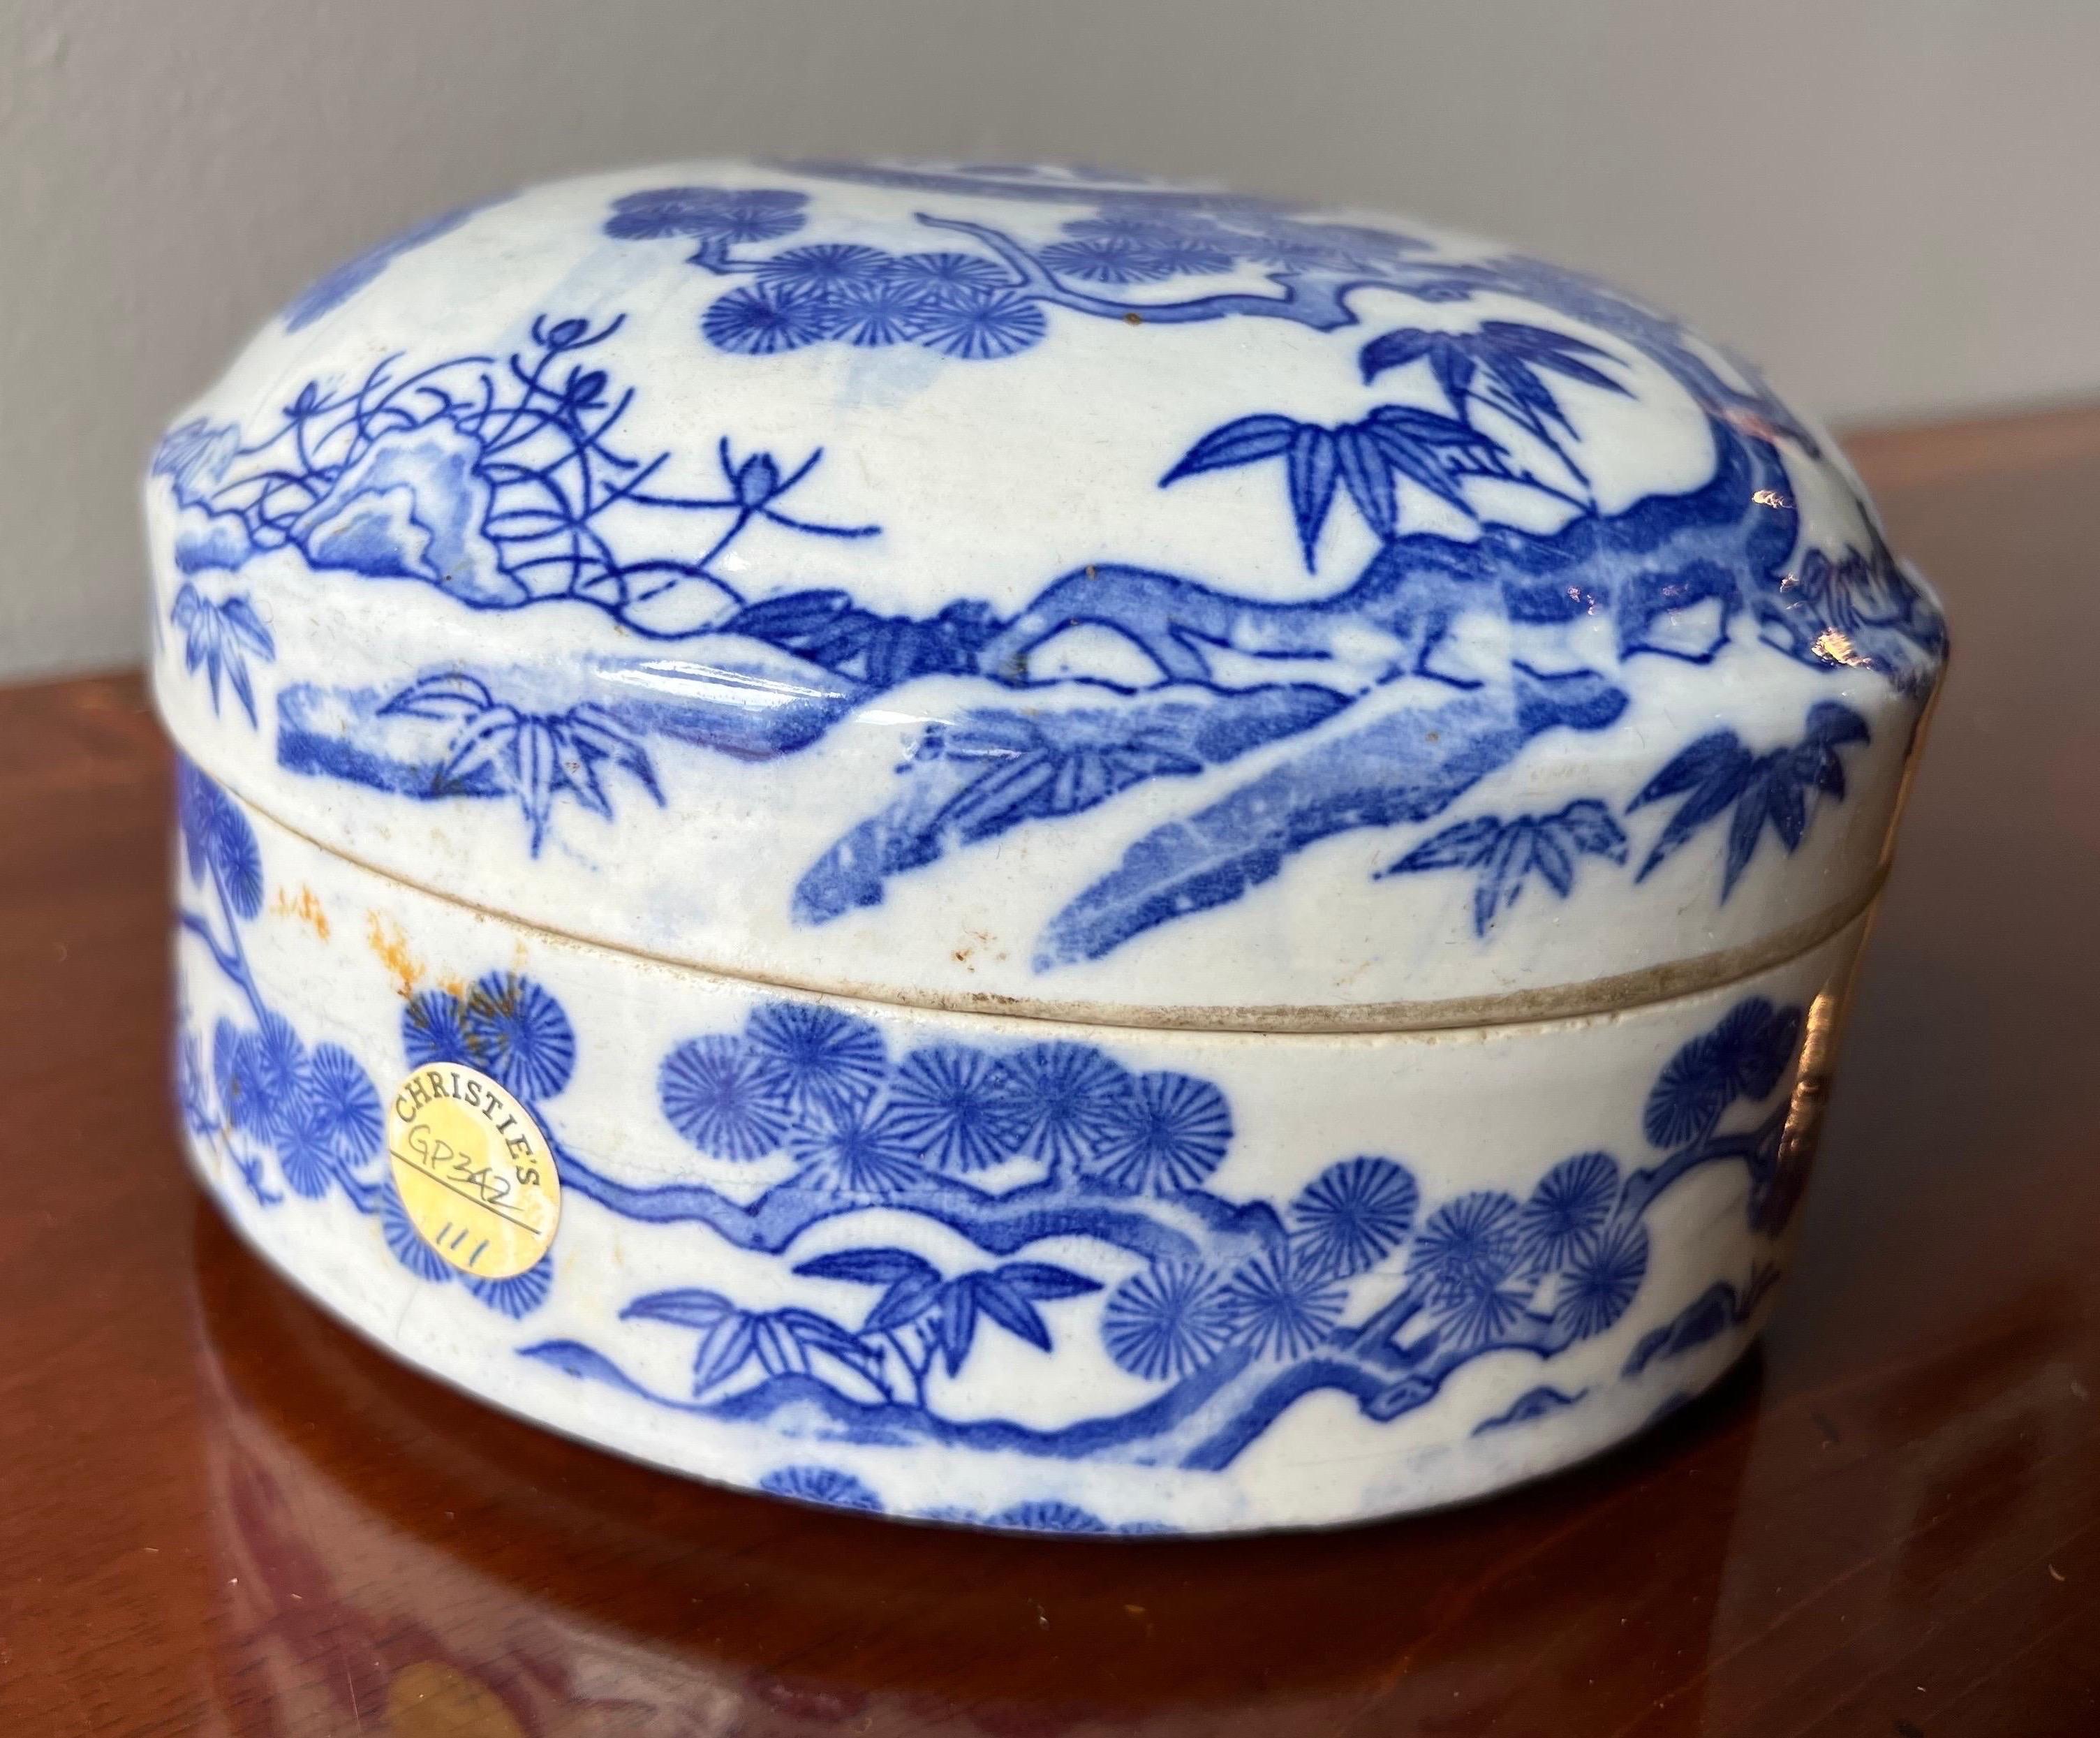 Chinesische Schale mit blau-weißem Deckel aus dem 18. bis frühen 20. Jahrhundert mit Christie's-Aufklebern. Vor 1911 wurde kein Label für das Herkunftsland vergeben.